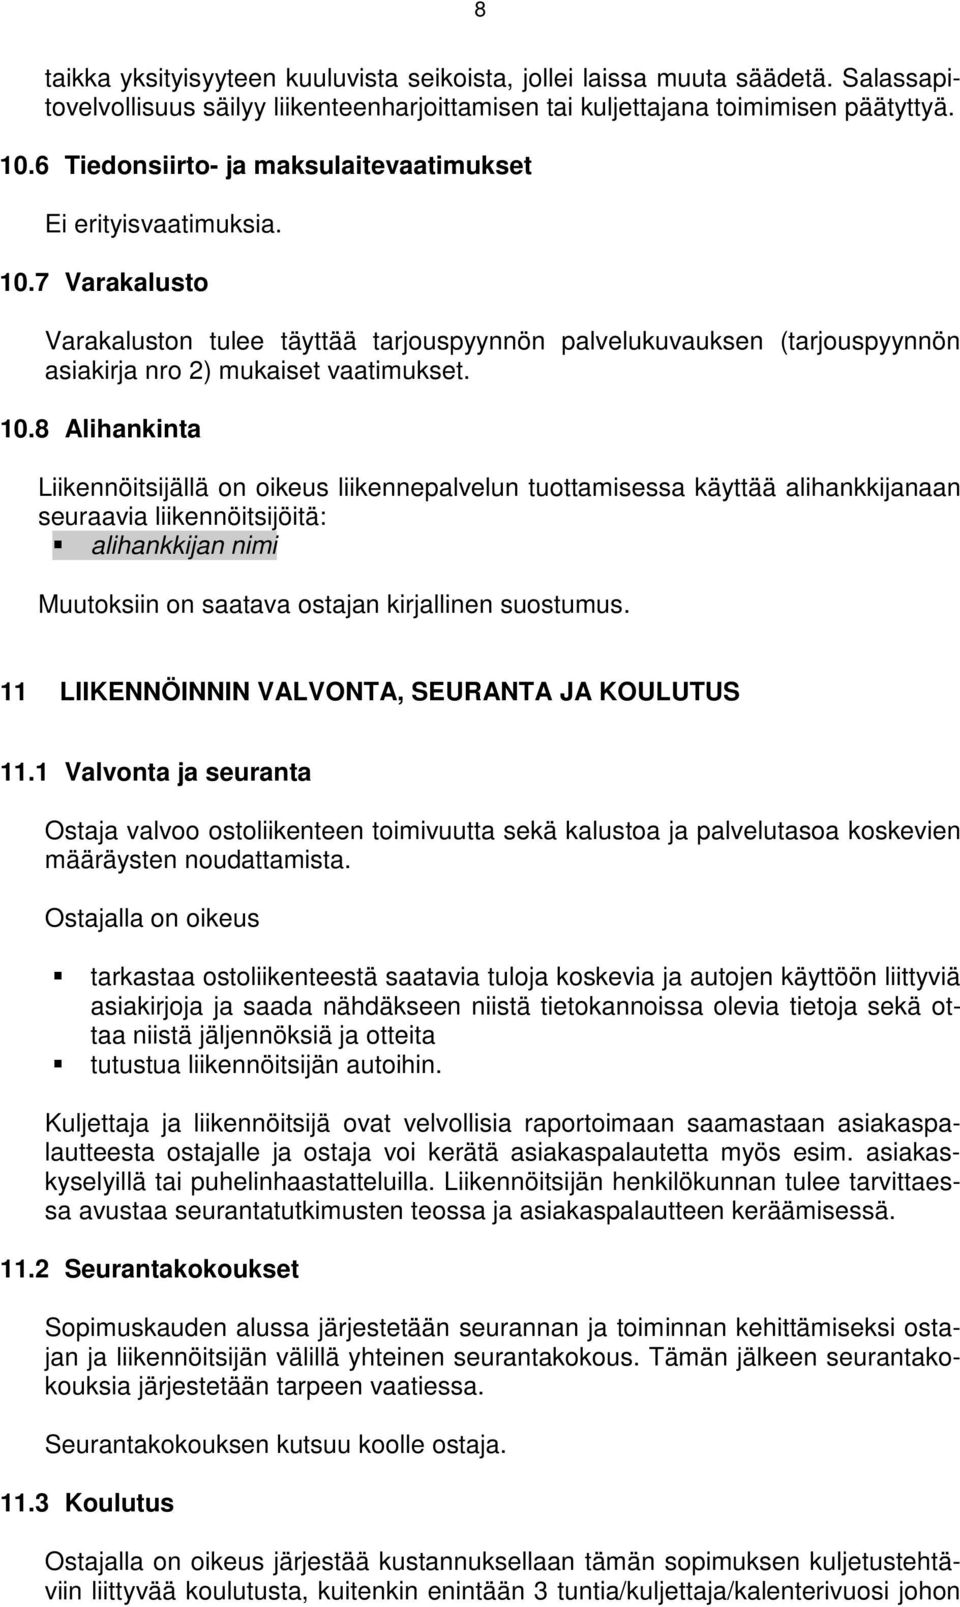 7 Varakalusto Varakaluston tulee täyttää tarjouspyynnön palvelukuvauksen (tarjouspyynnön asiakirja nro 2) mukaiset vaatimukset. 10.